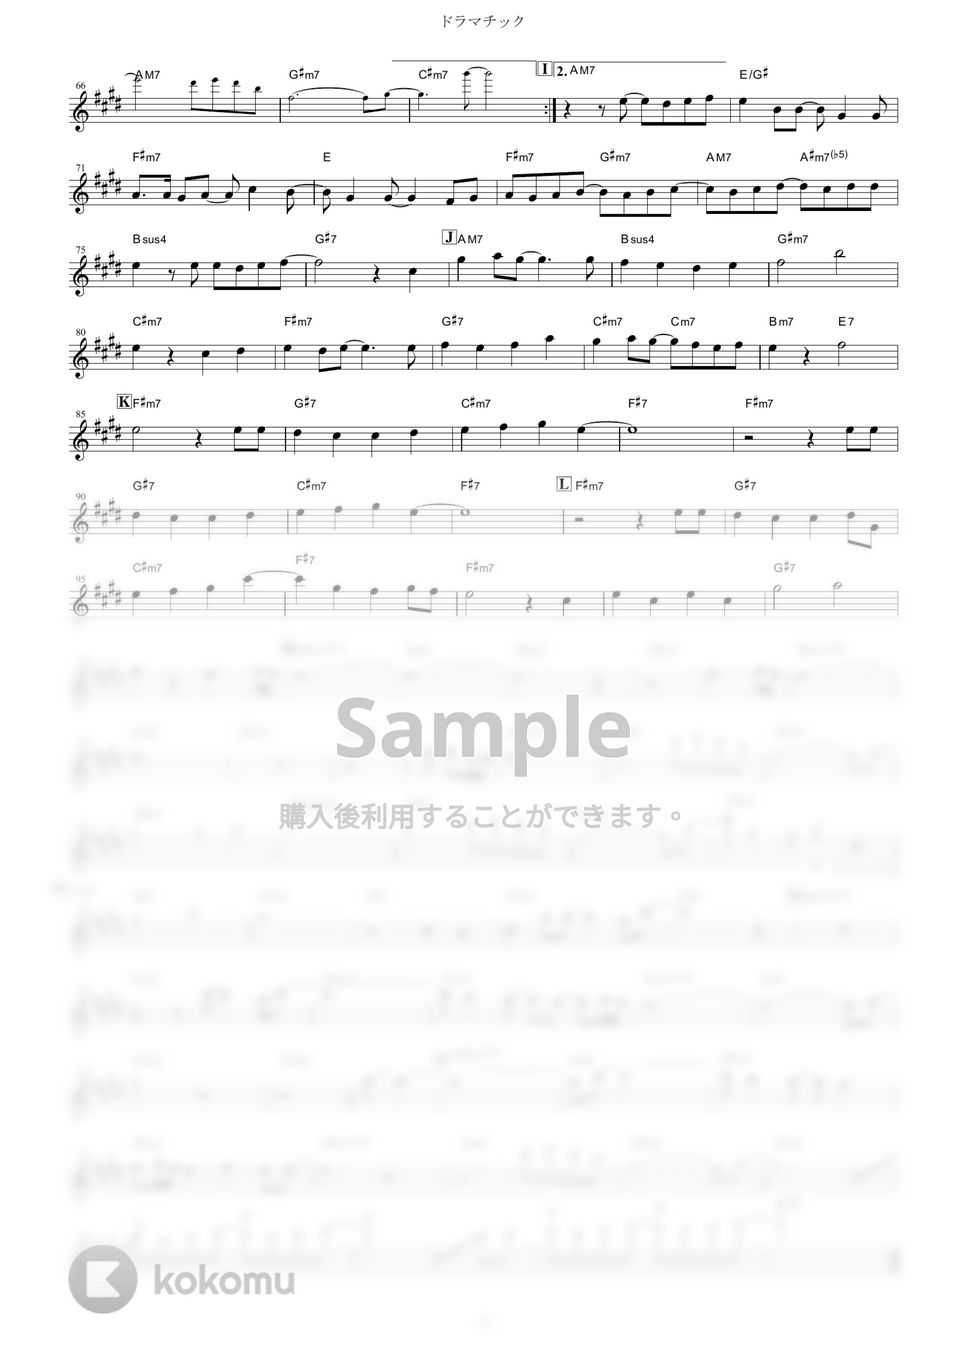 YUKI - ドラマチック (『ハチミツとクローバー』 / in Eb) by muta-sax